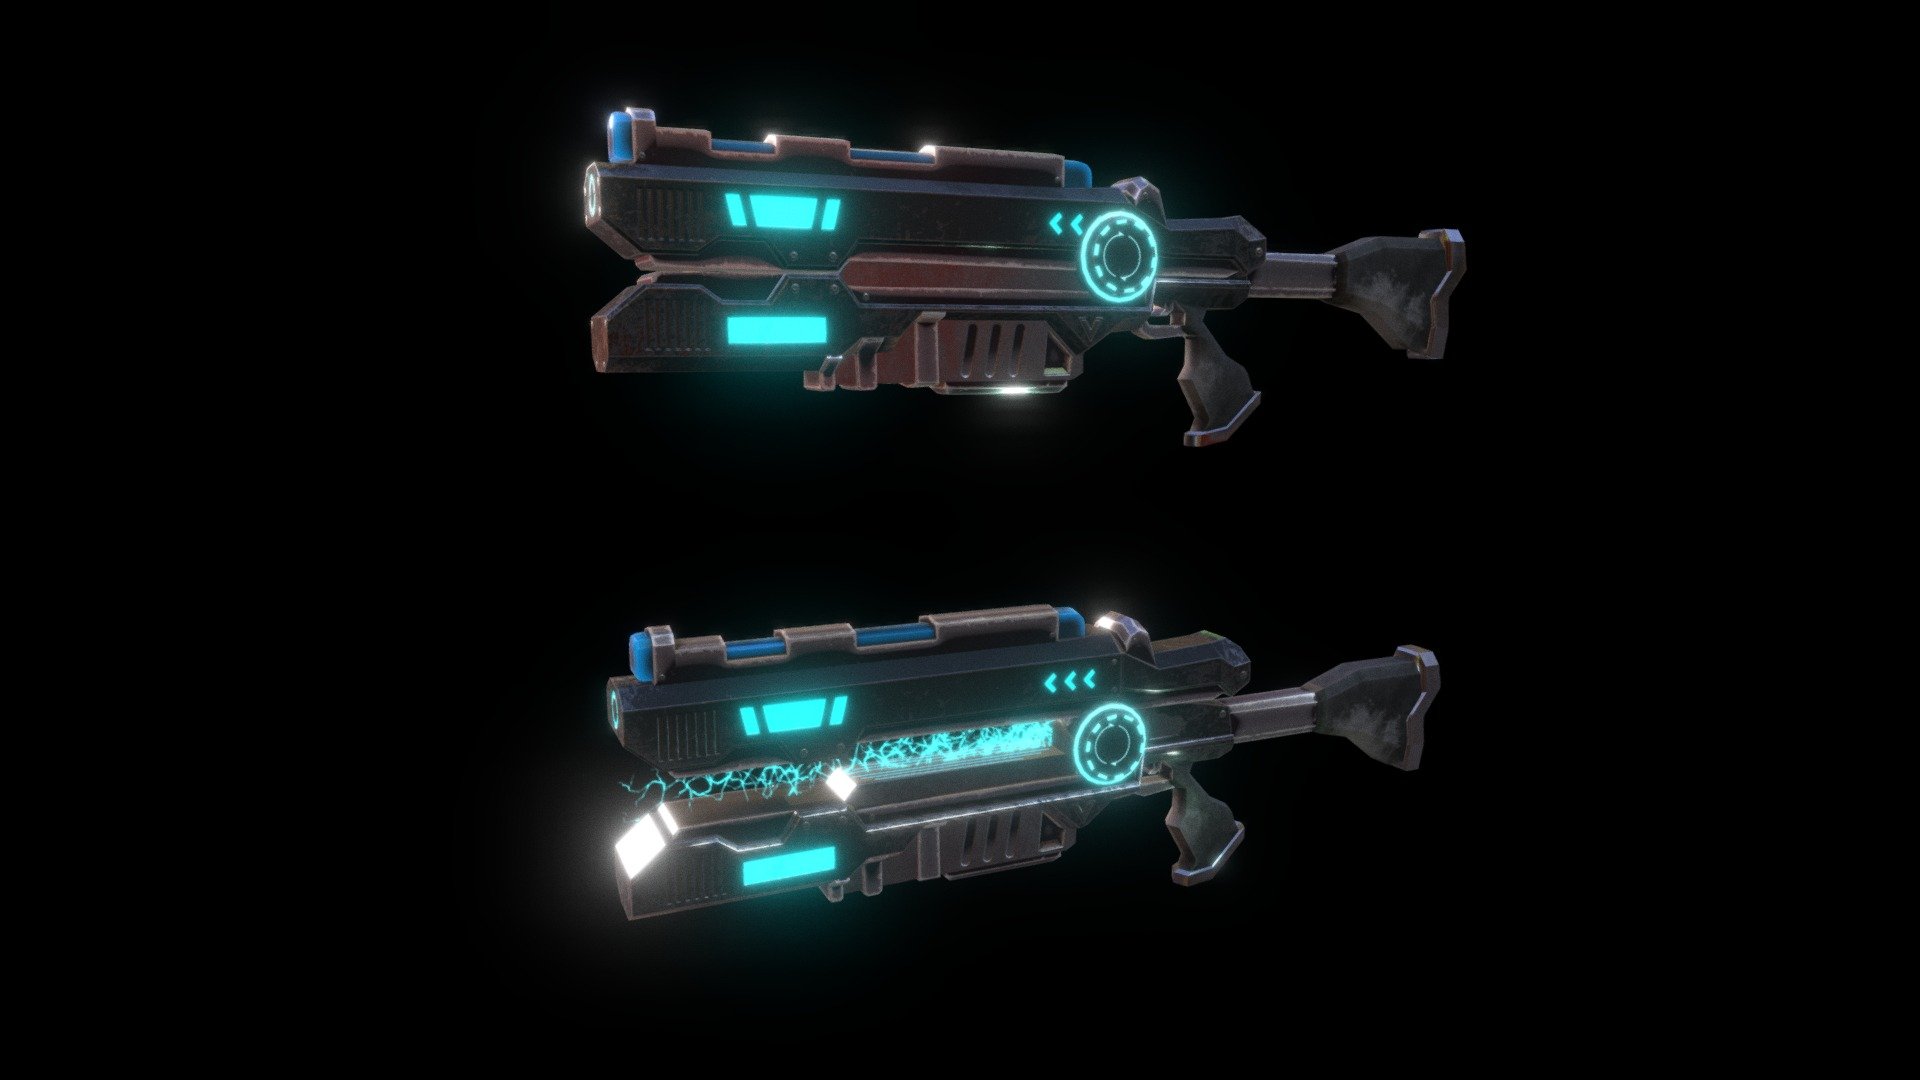 Laser Gun